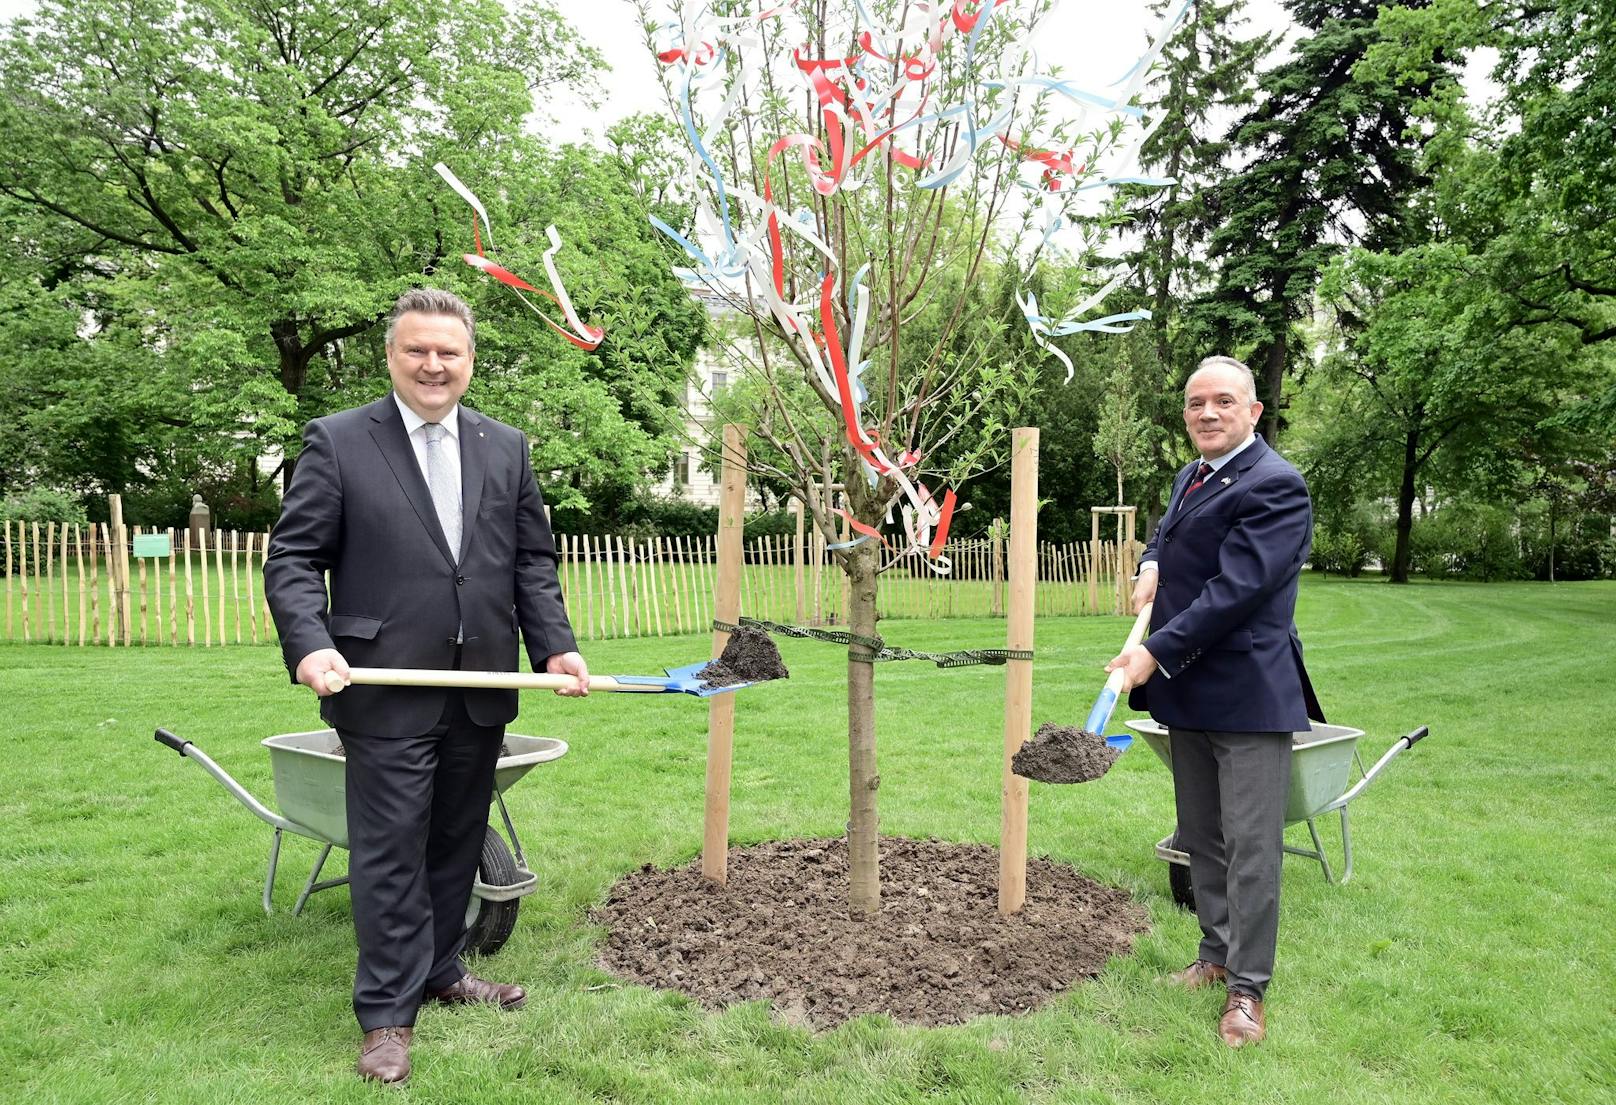 Bürgermeister Ludwig pflanzt mit dem Botschafter aus Israel einen Mandelbaum